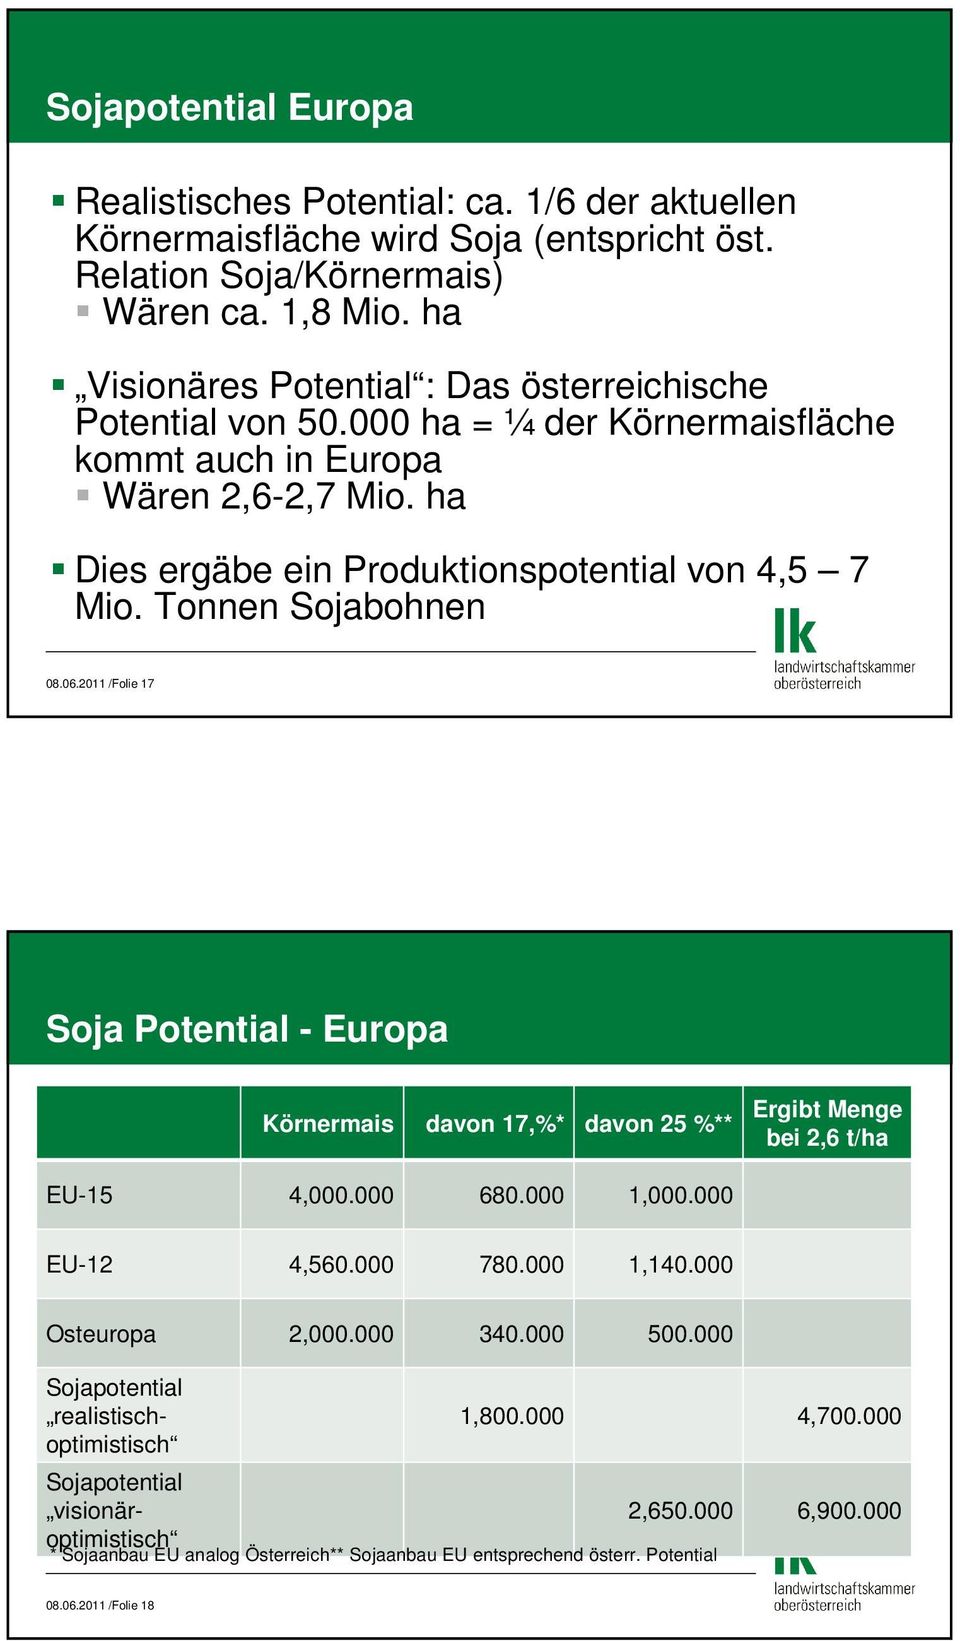 Tonnen Sojabohnen 08.06.2011 /Folie 17 Soja Potential - Europa Körnermais davon 17,%* davon 25 %** Ergibt Menge bei 2,6 t/ha EU-15 4,000.000 680.000 1,000.000 EU-12 4,560.000 780.000 1,140.